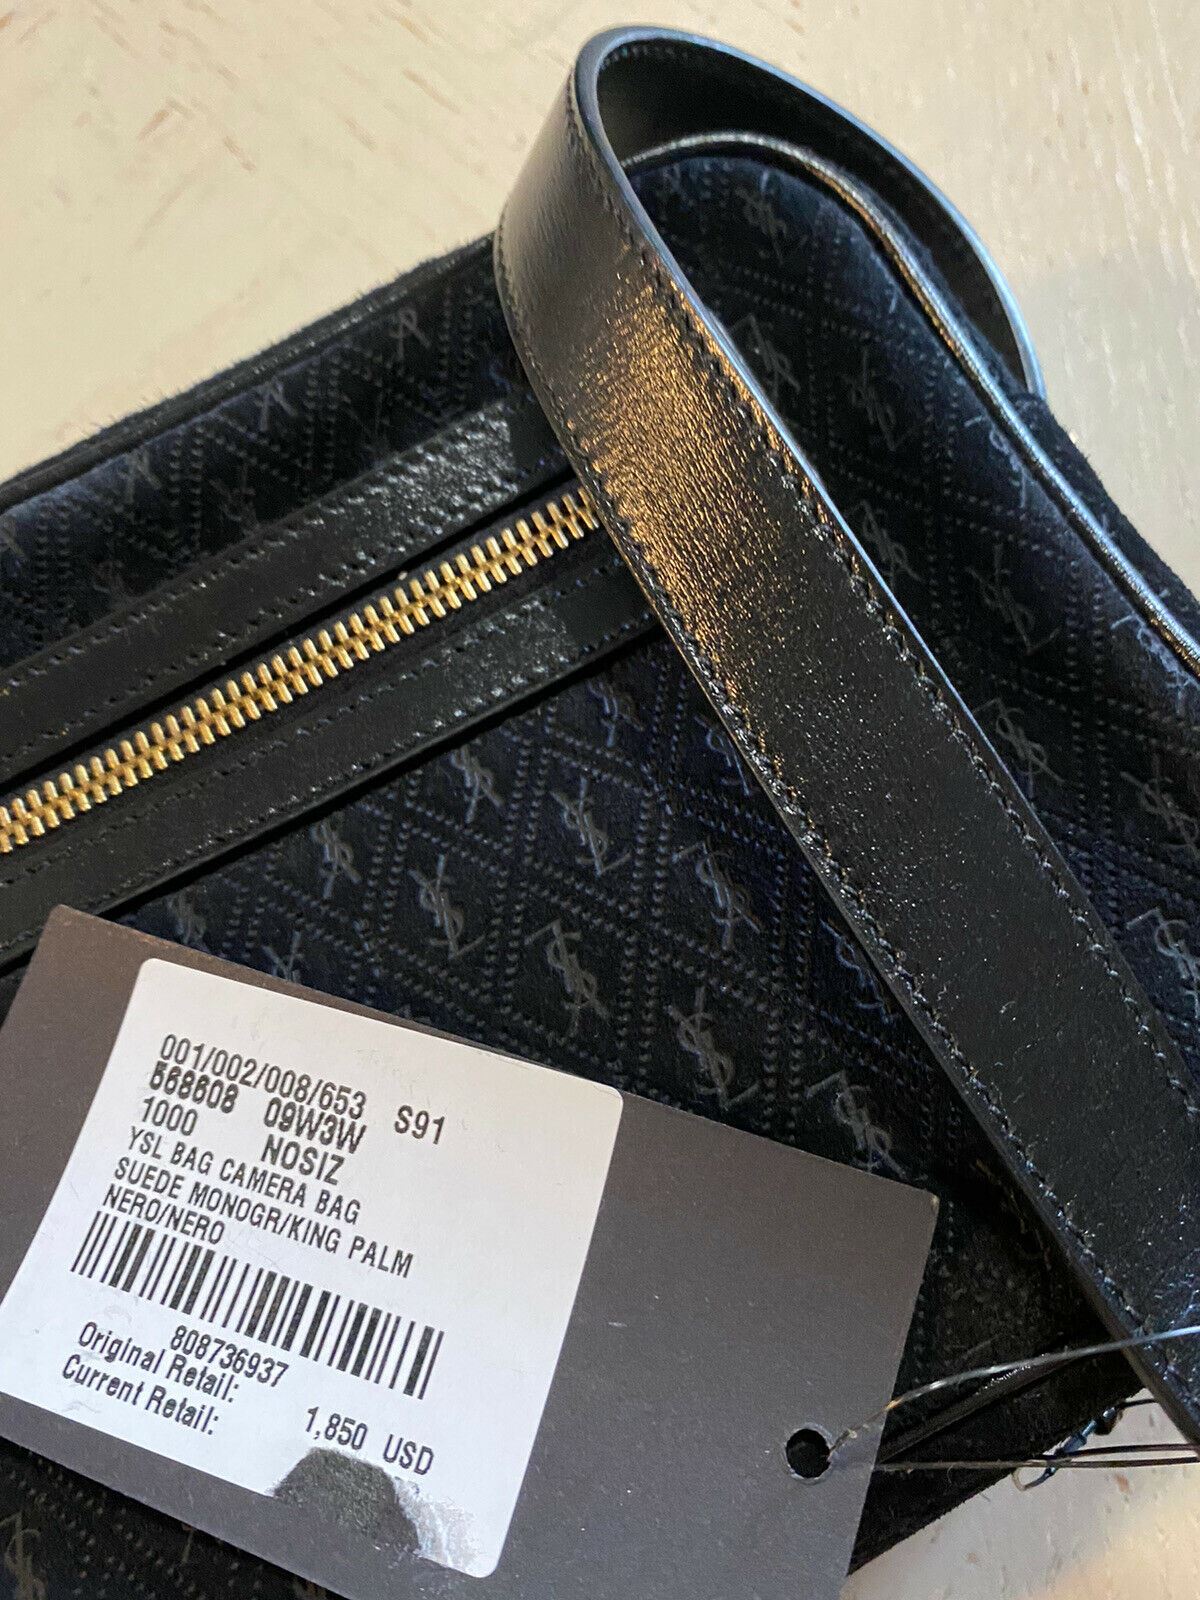 New $1850 Saint Laurent Leather/Suede YSL Crossbody Shoulder Bag Black 568608